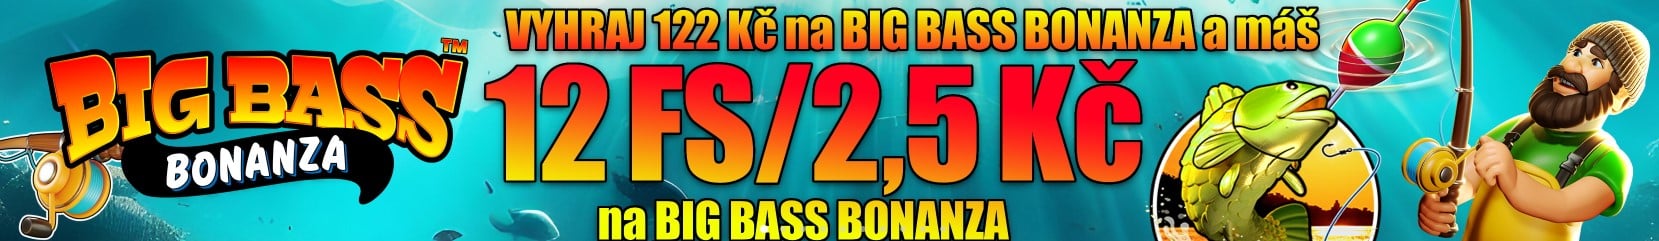 dedek-big-bass-bonanza